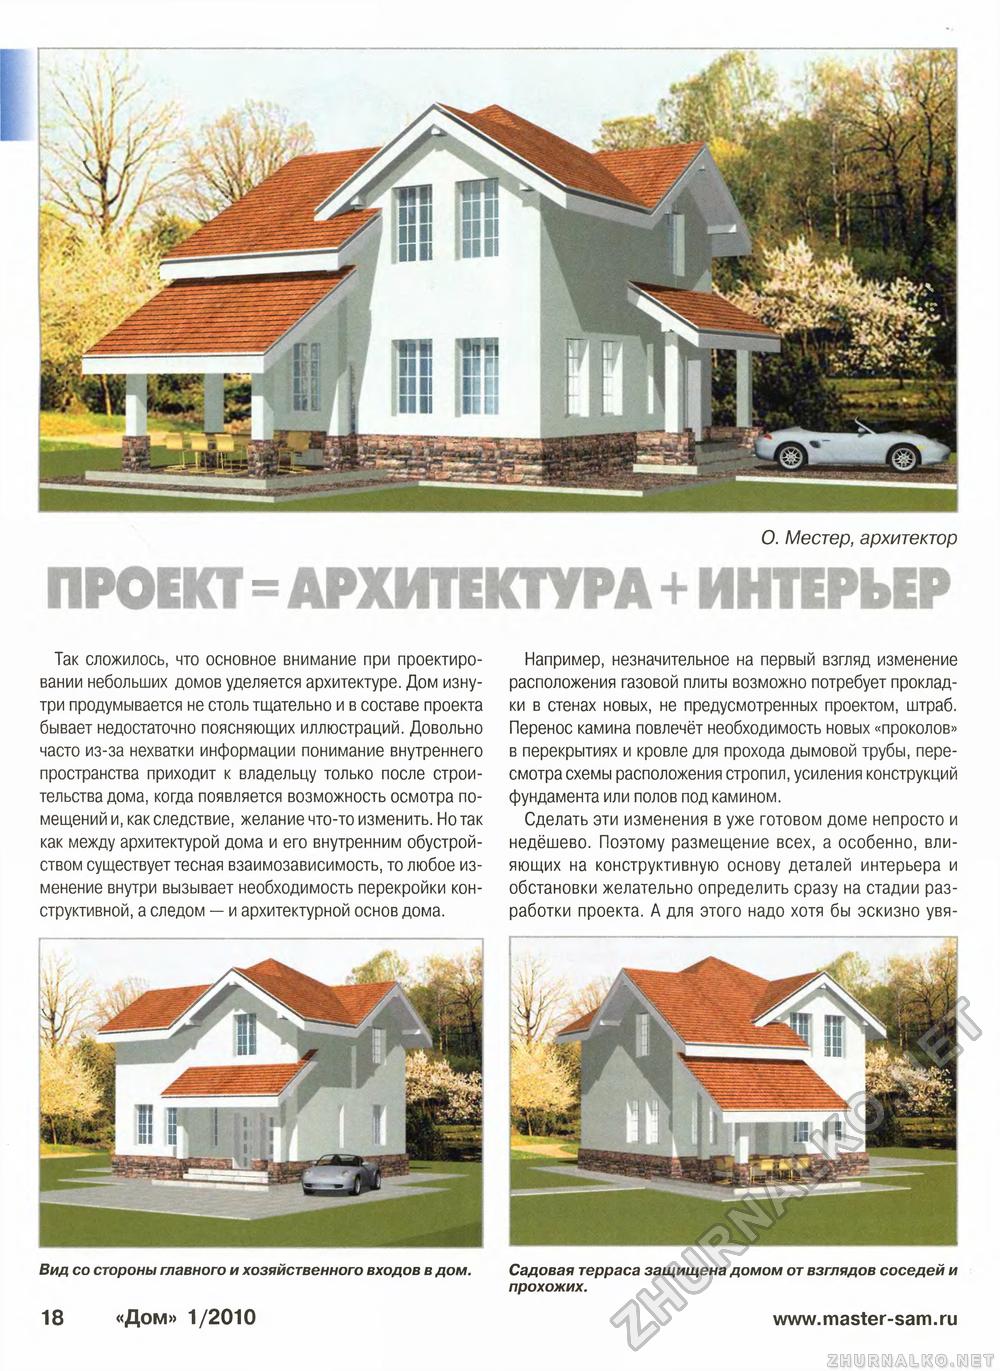 Дом 2010-01, страница 18